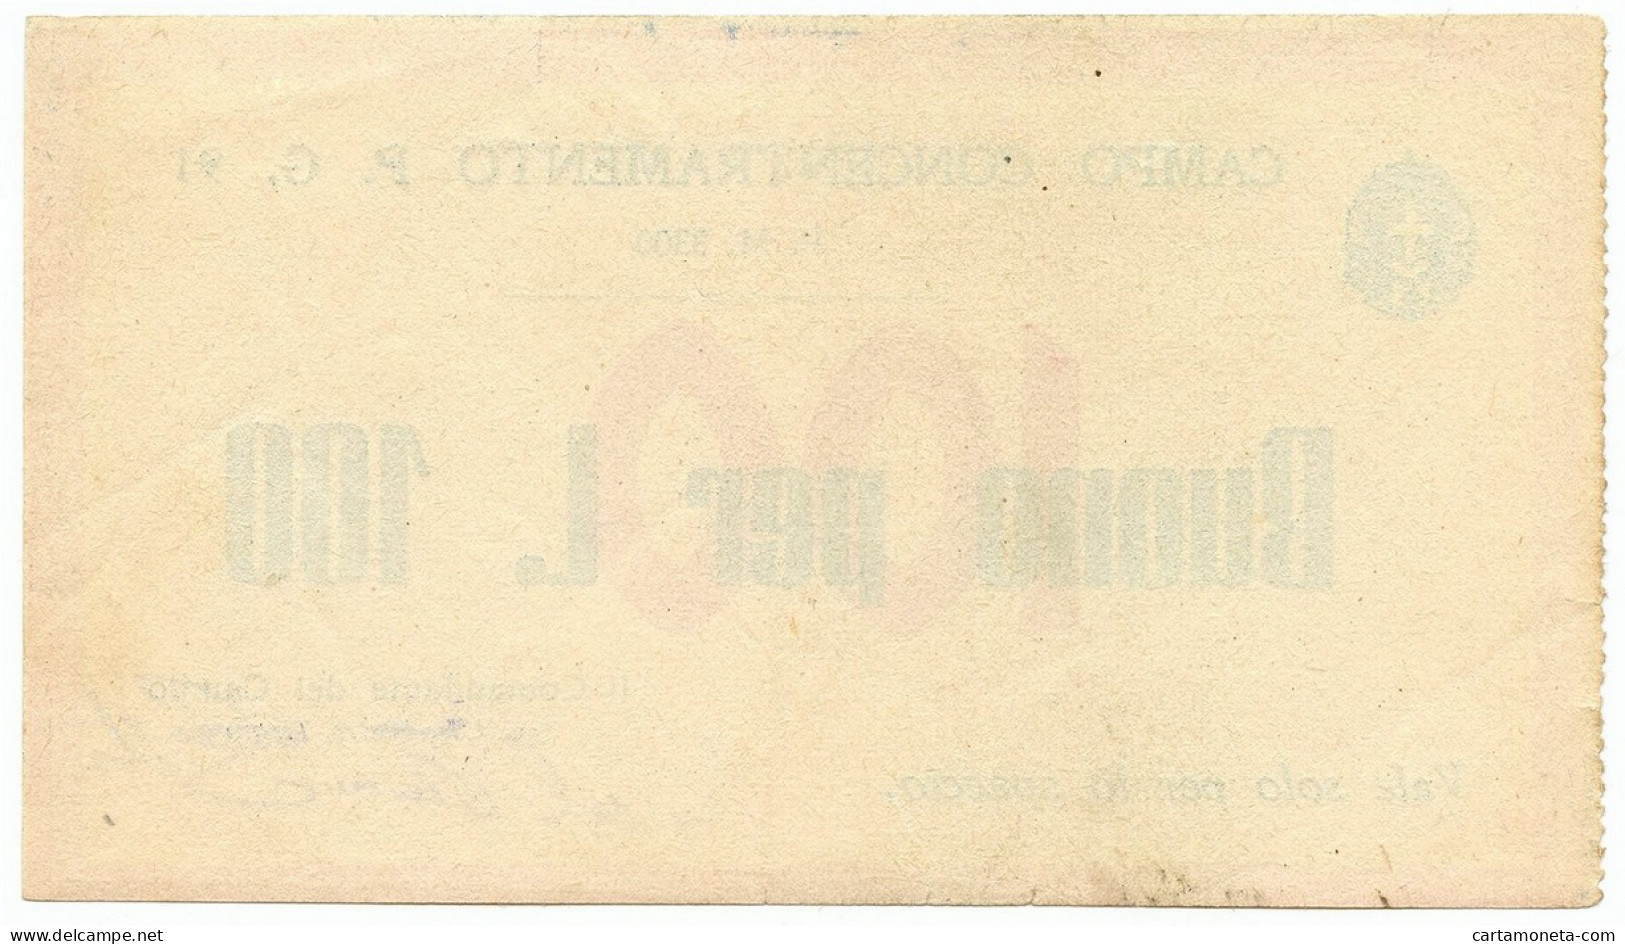 100 LIRE PRIGIONIERI GUERRA CAMPO DI CONCENTRAMENTO 91 AVEZZANO (AQ) 1939/45 SPL - Autres & Non Classés